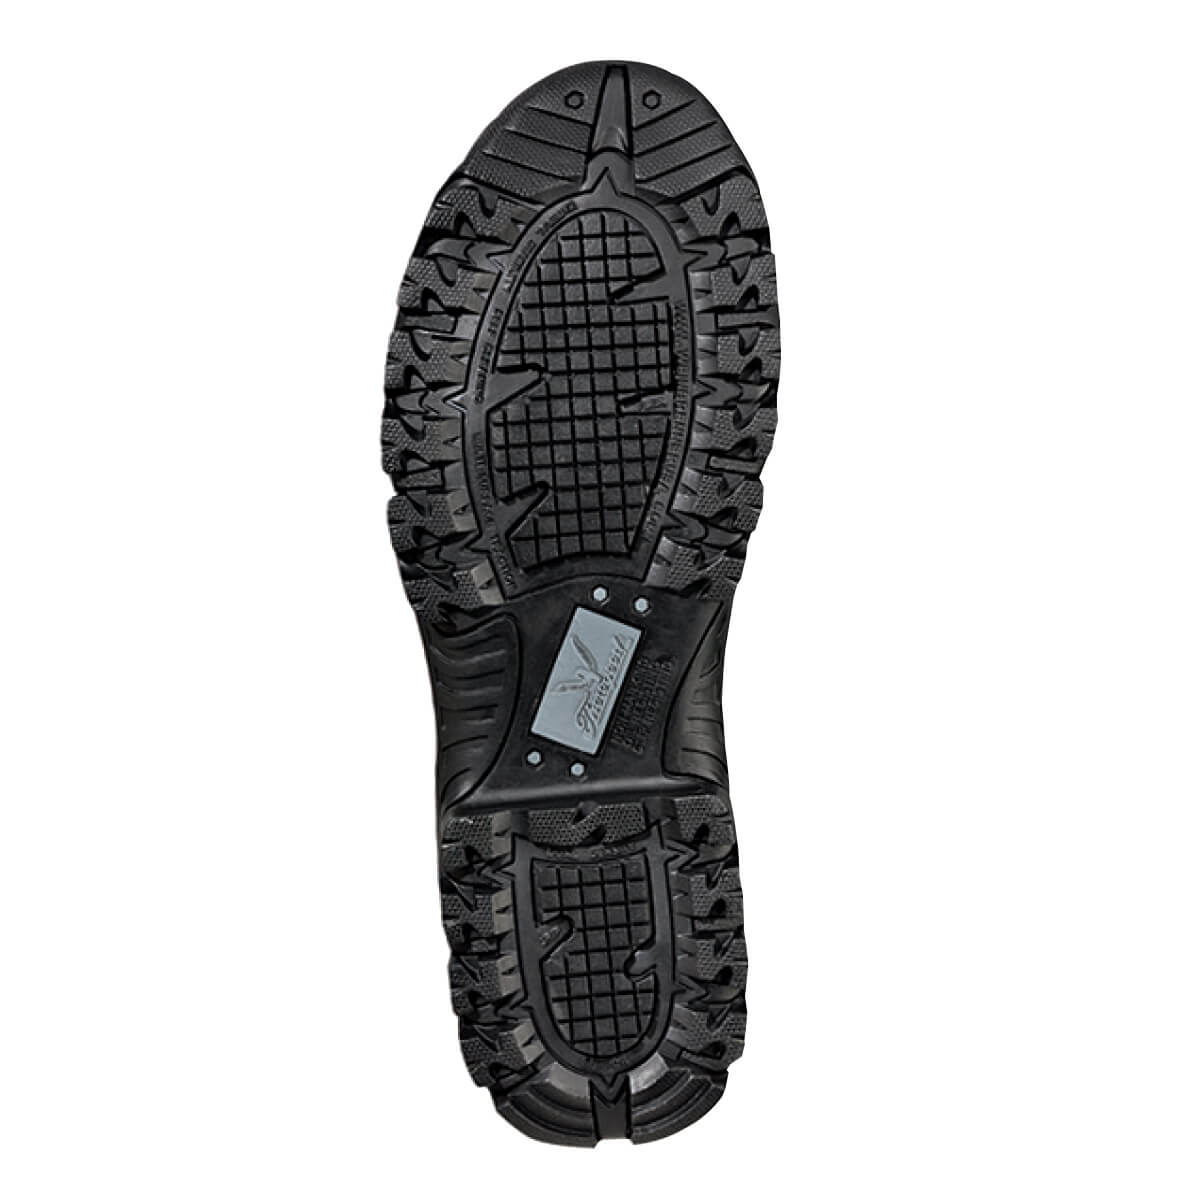 Thorogood The Deuce Series 6" Waterproof Side Zip Boots - 834-6218